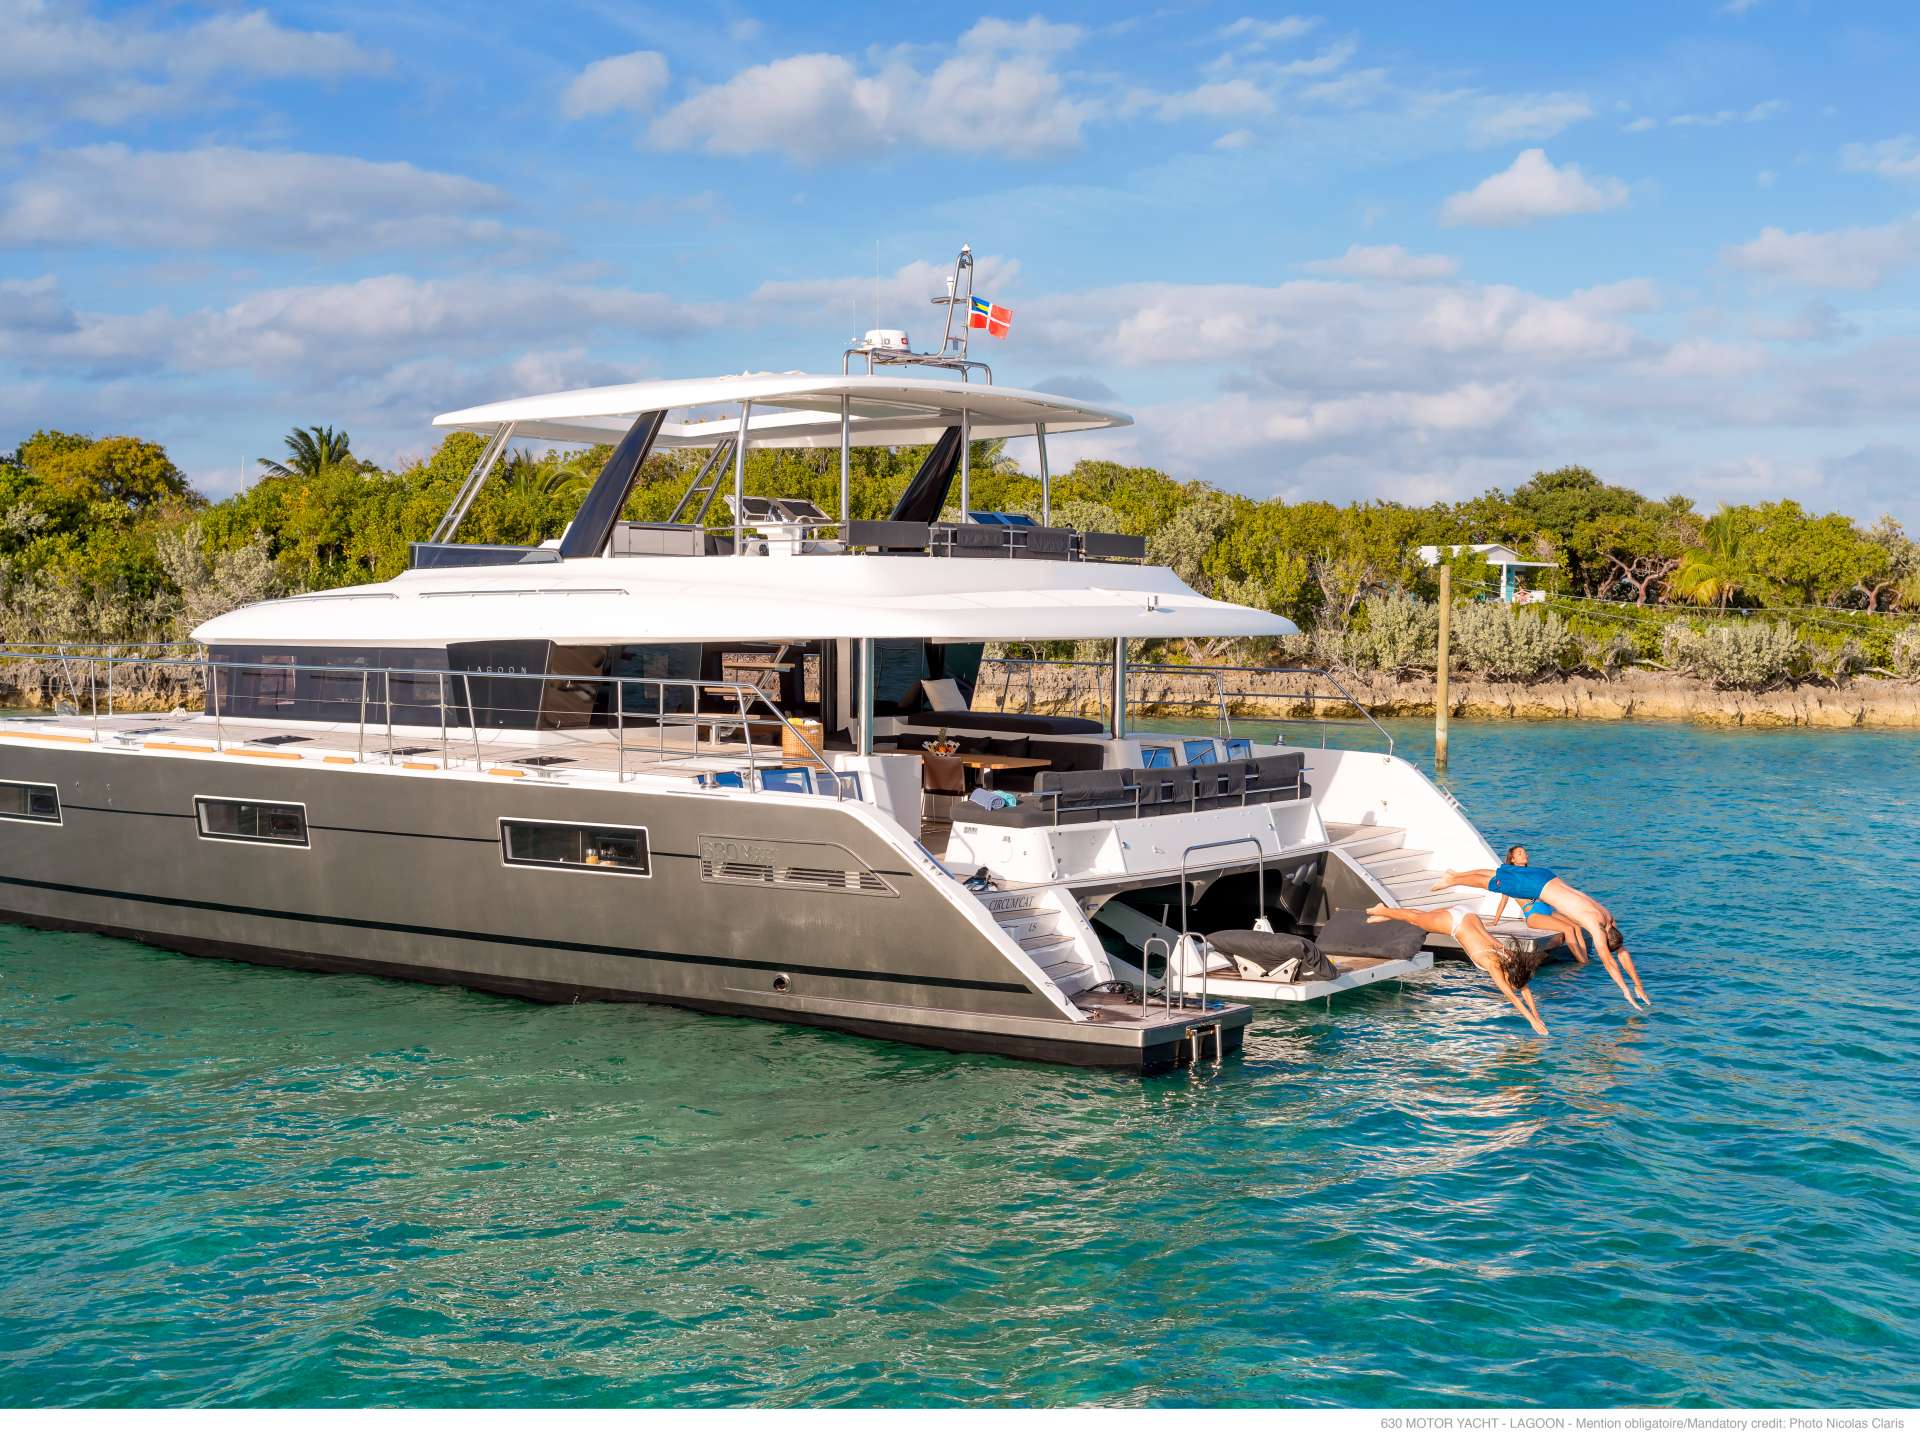 galux one - Yacht Charter Skopelos & Boat hire in Greece 4